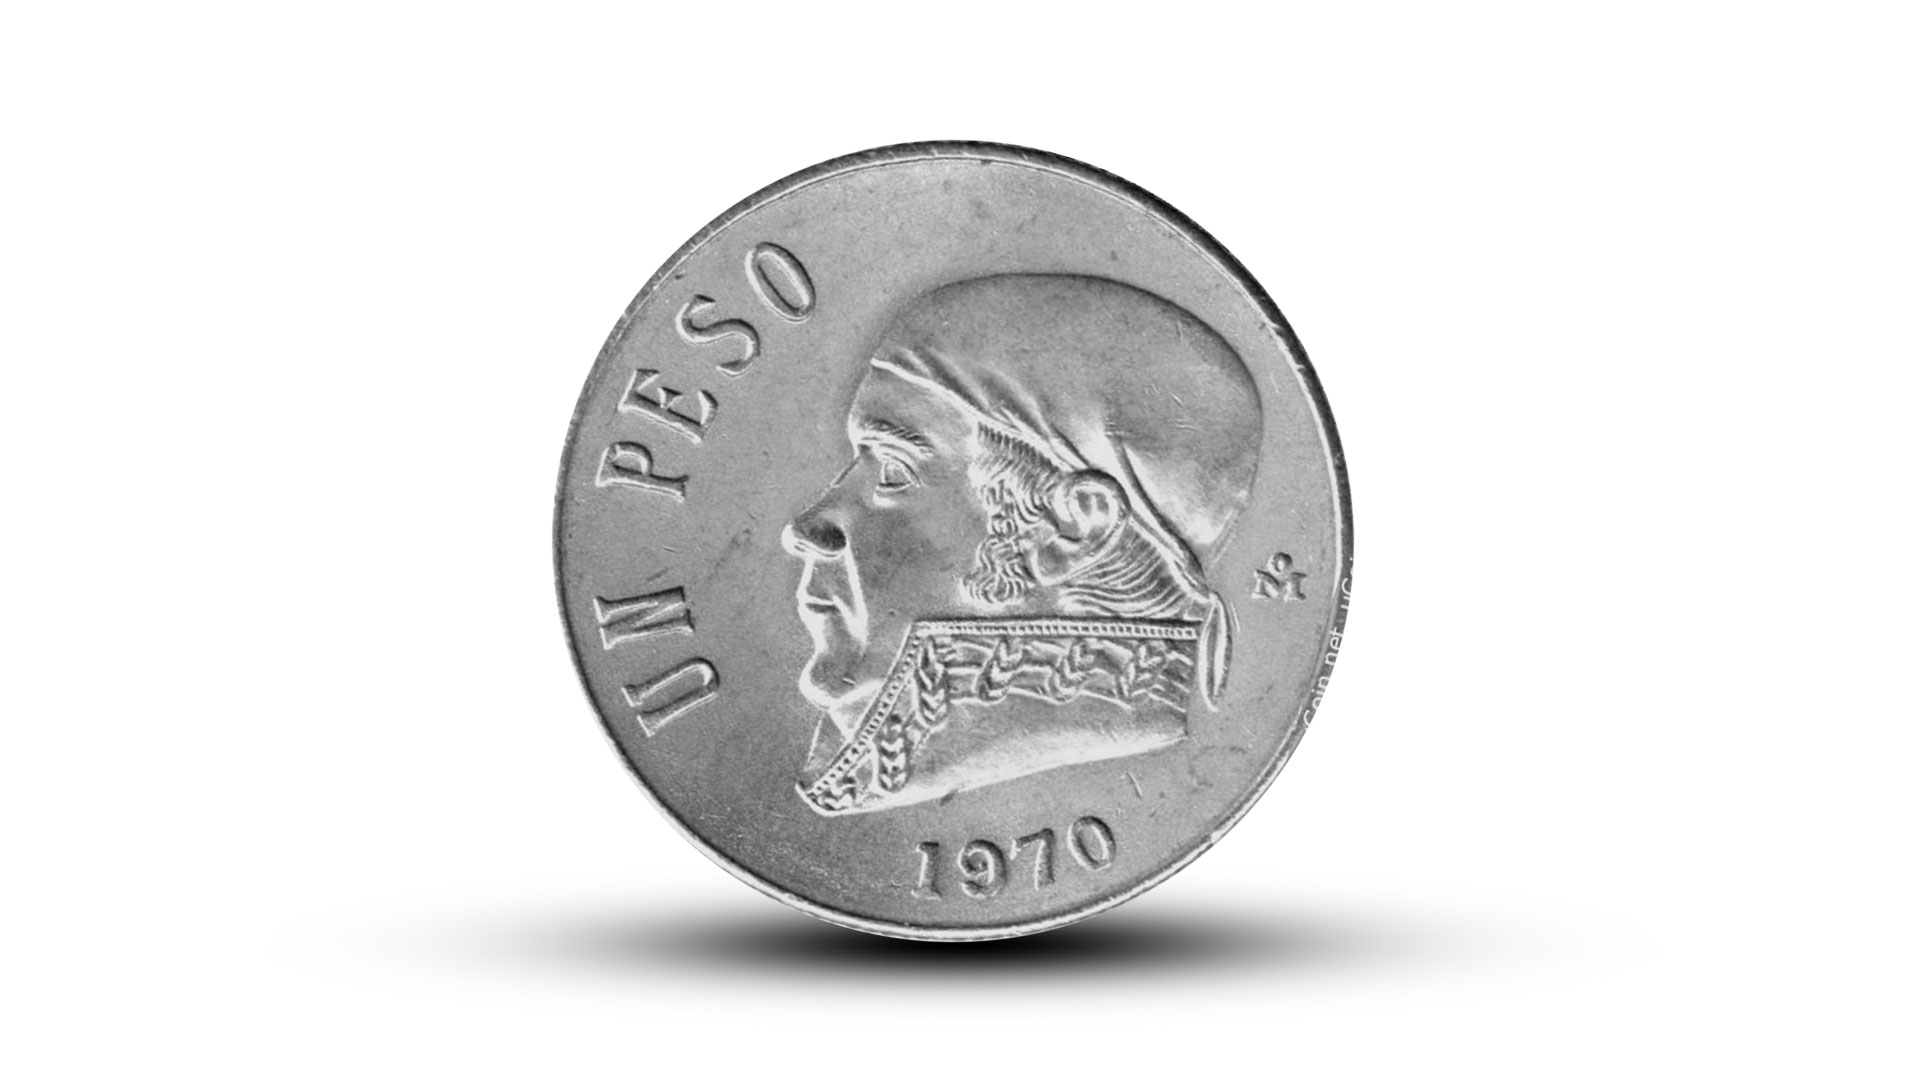 Una moneda antes de esta que era de plata Ley 100 tiene más valor. Esta es de 1970 y es de níquel. (Foto: Infobae)